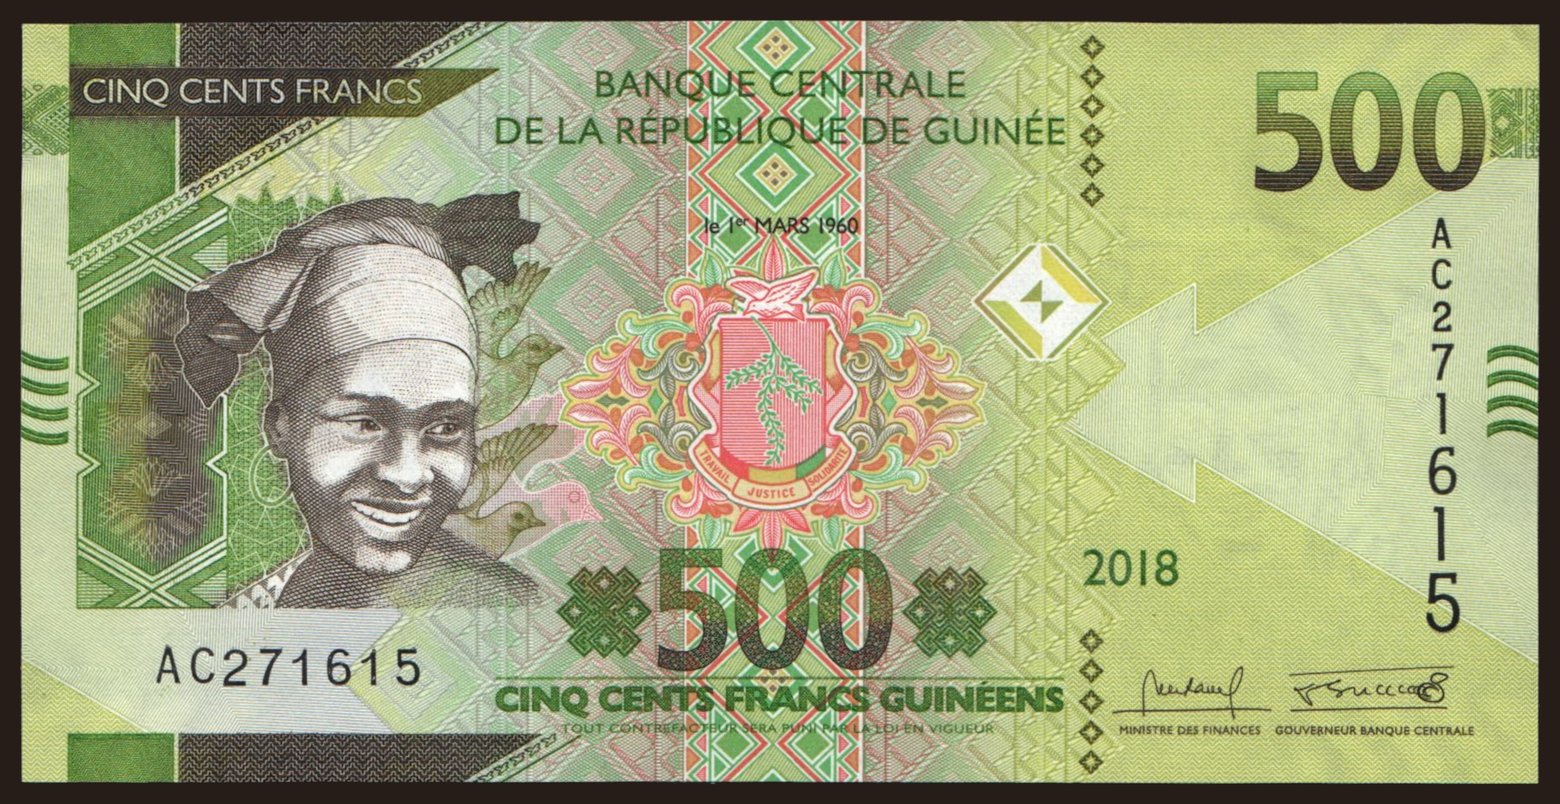 500 francs, 2018